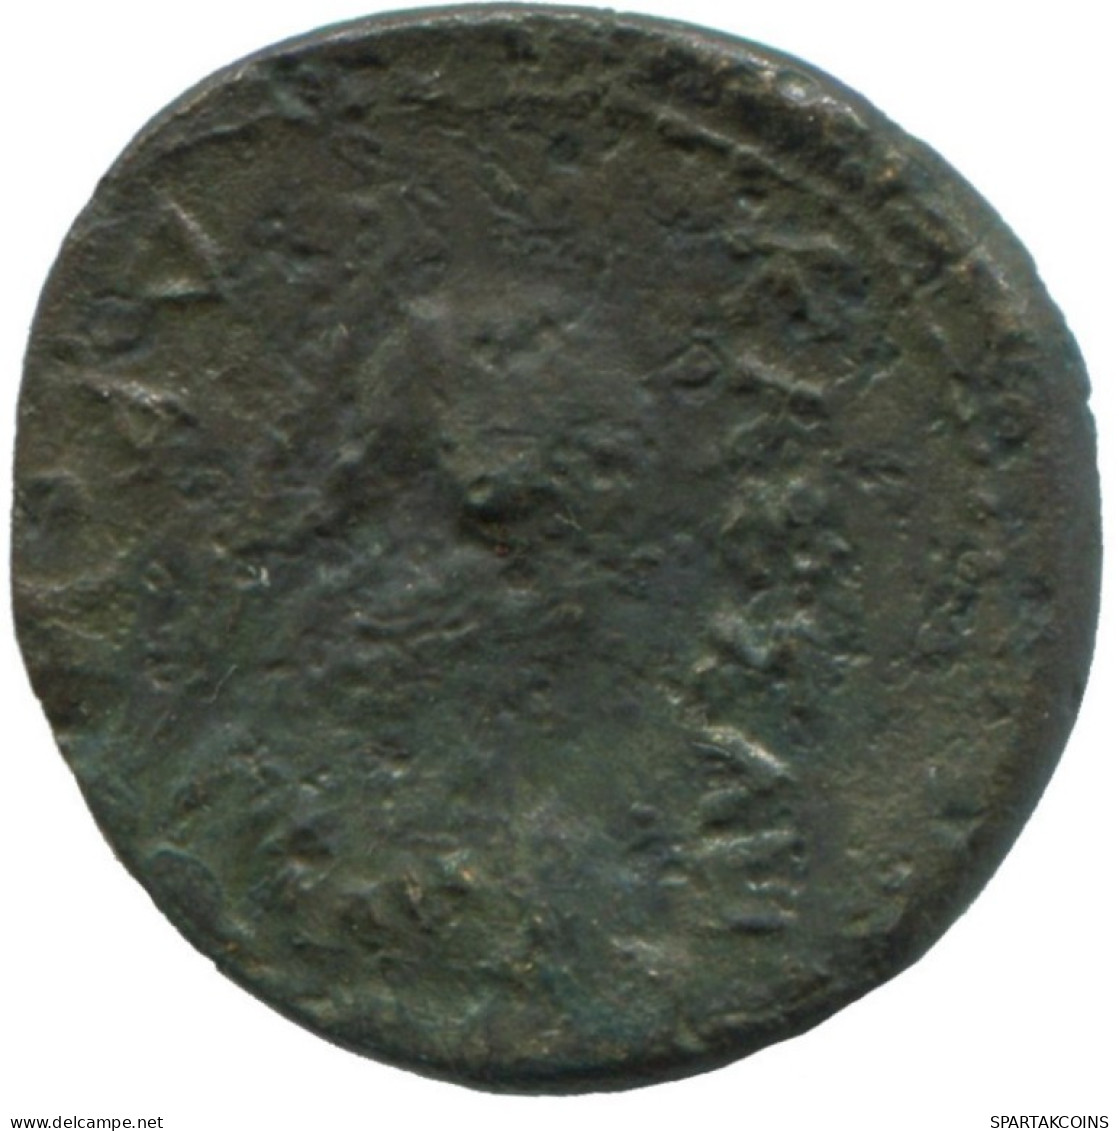 AUTHENTIC ORIGINAL GRIECHISCHE Münze 2.9g/17mm #ANN1032.24.D.A - Griechische Münzen